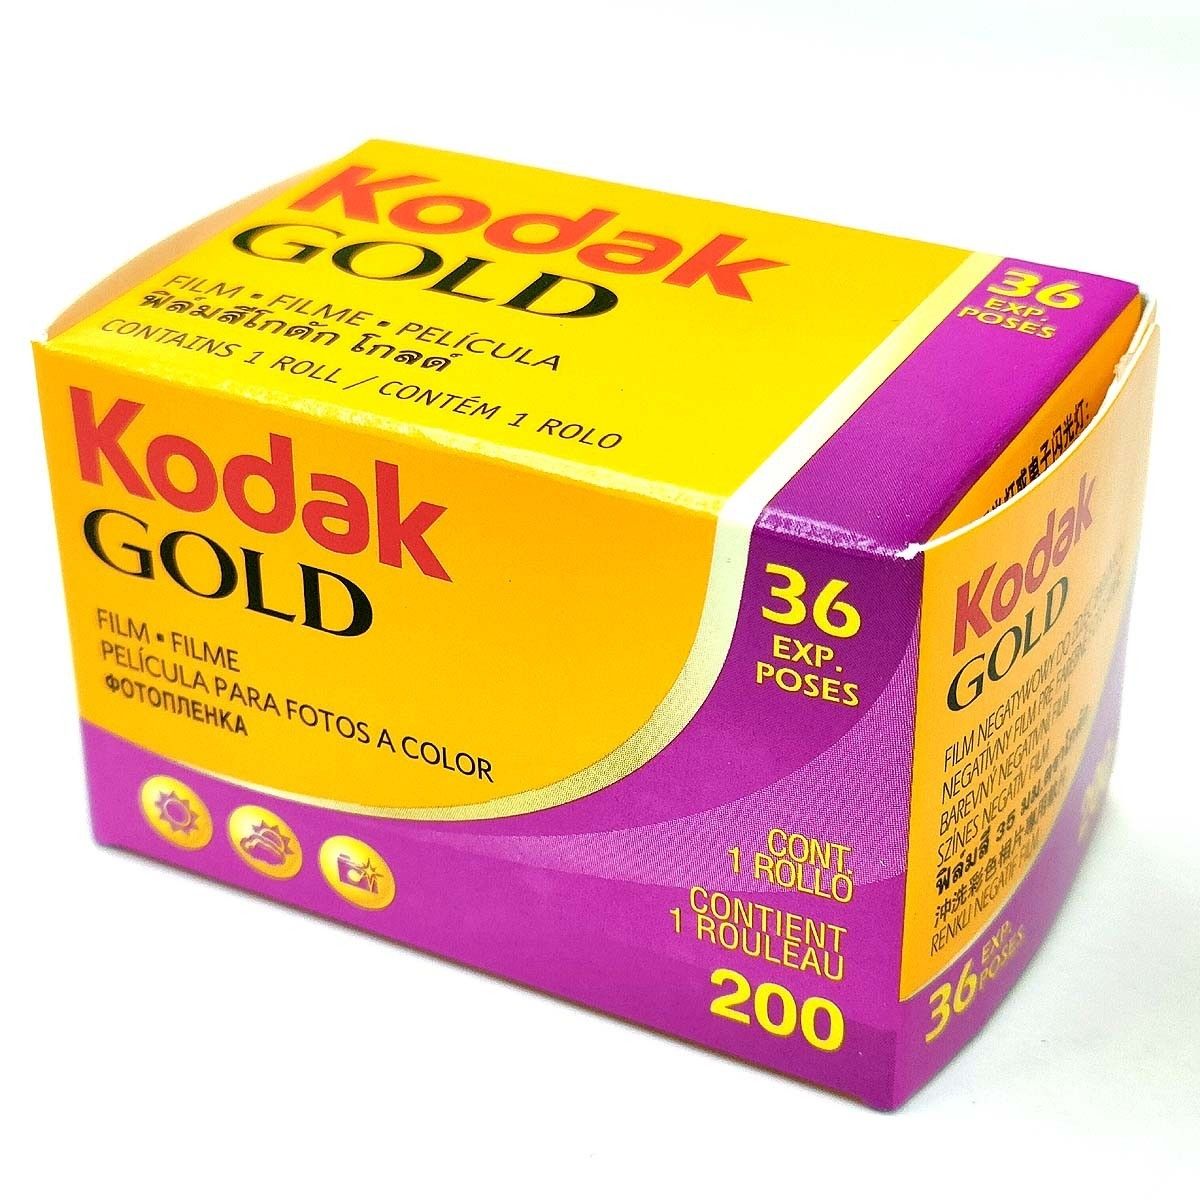 [3本セット] GOLD 200-36枚撮 Kodak ネガカラーフィルム 135/35mm 新品 コダック ネガフィルム